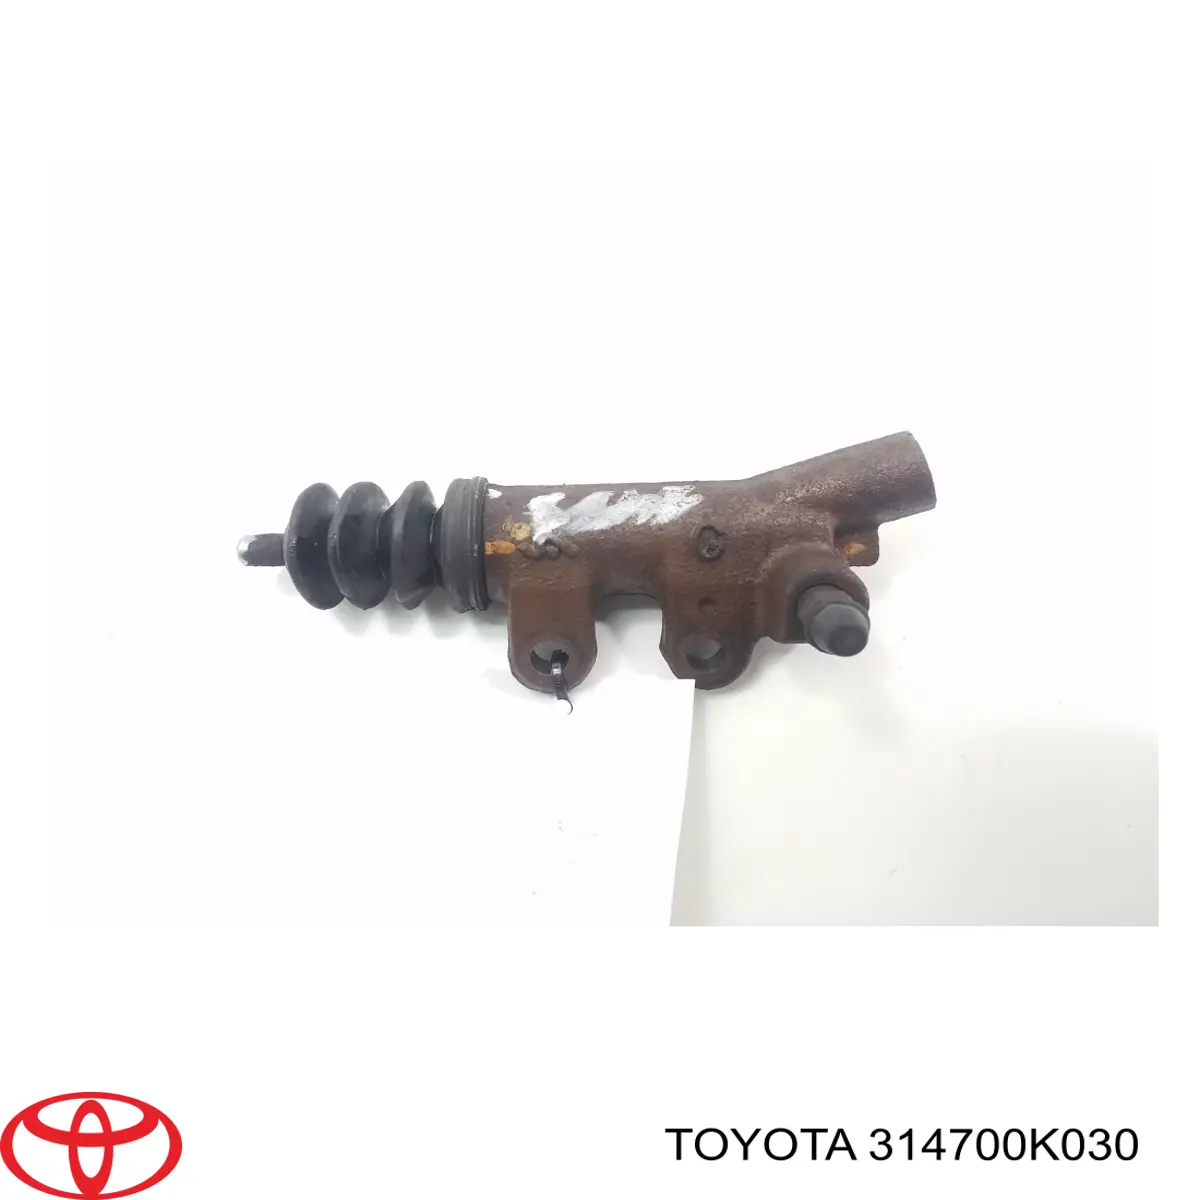 Цилиндр сцепления рабочий Toyota 314700K030